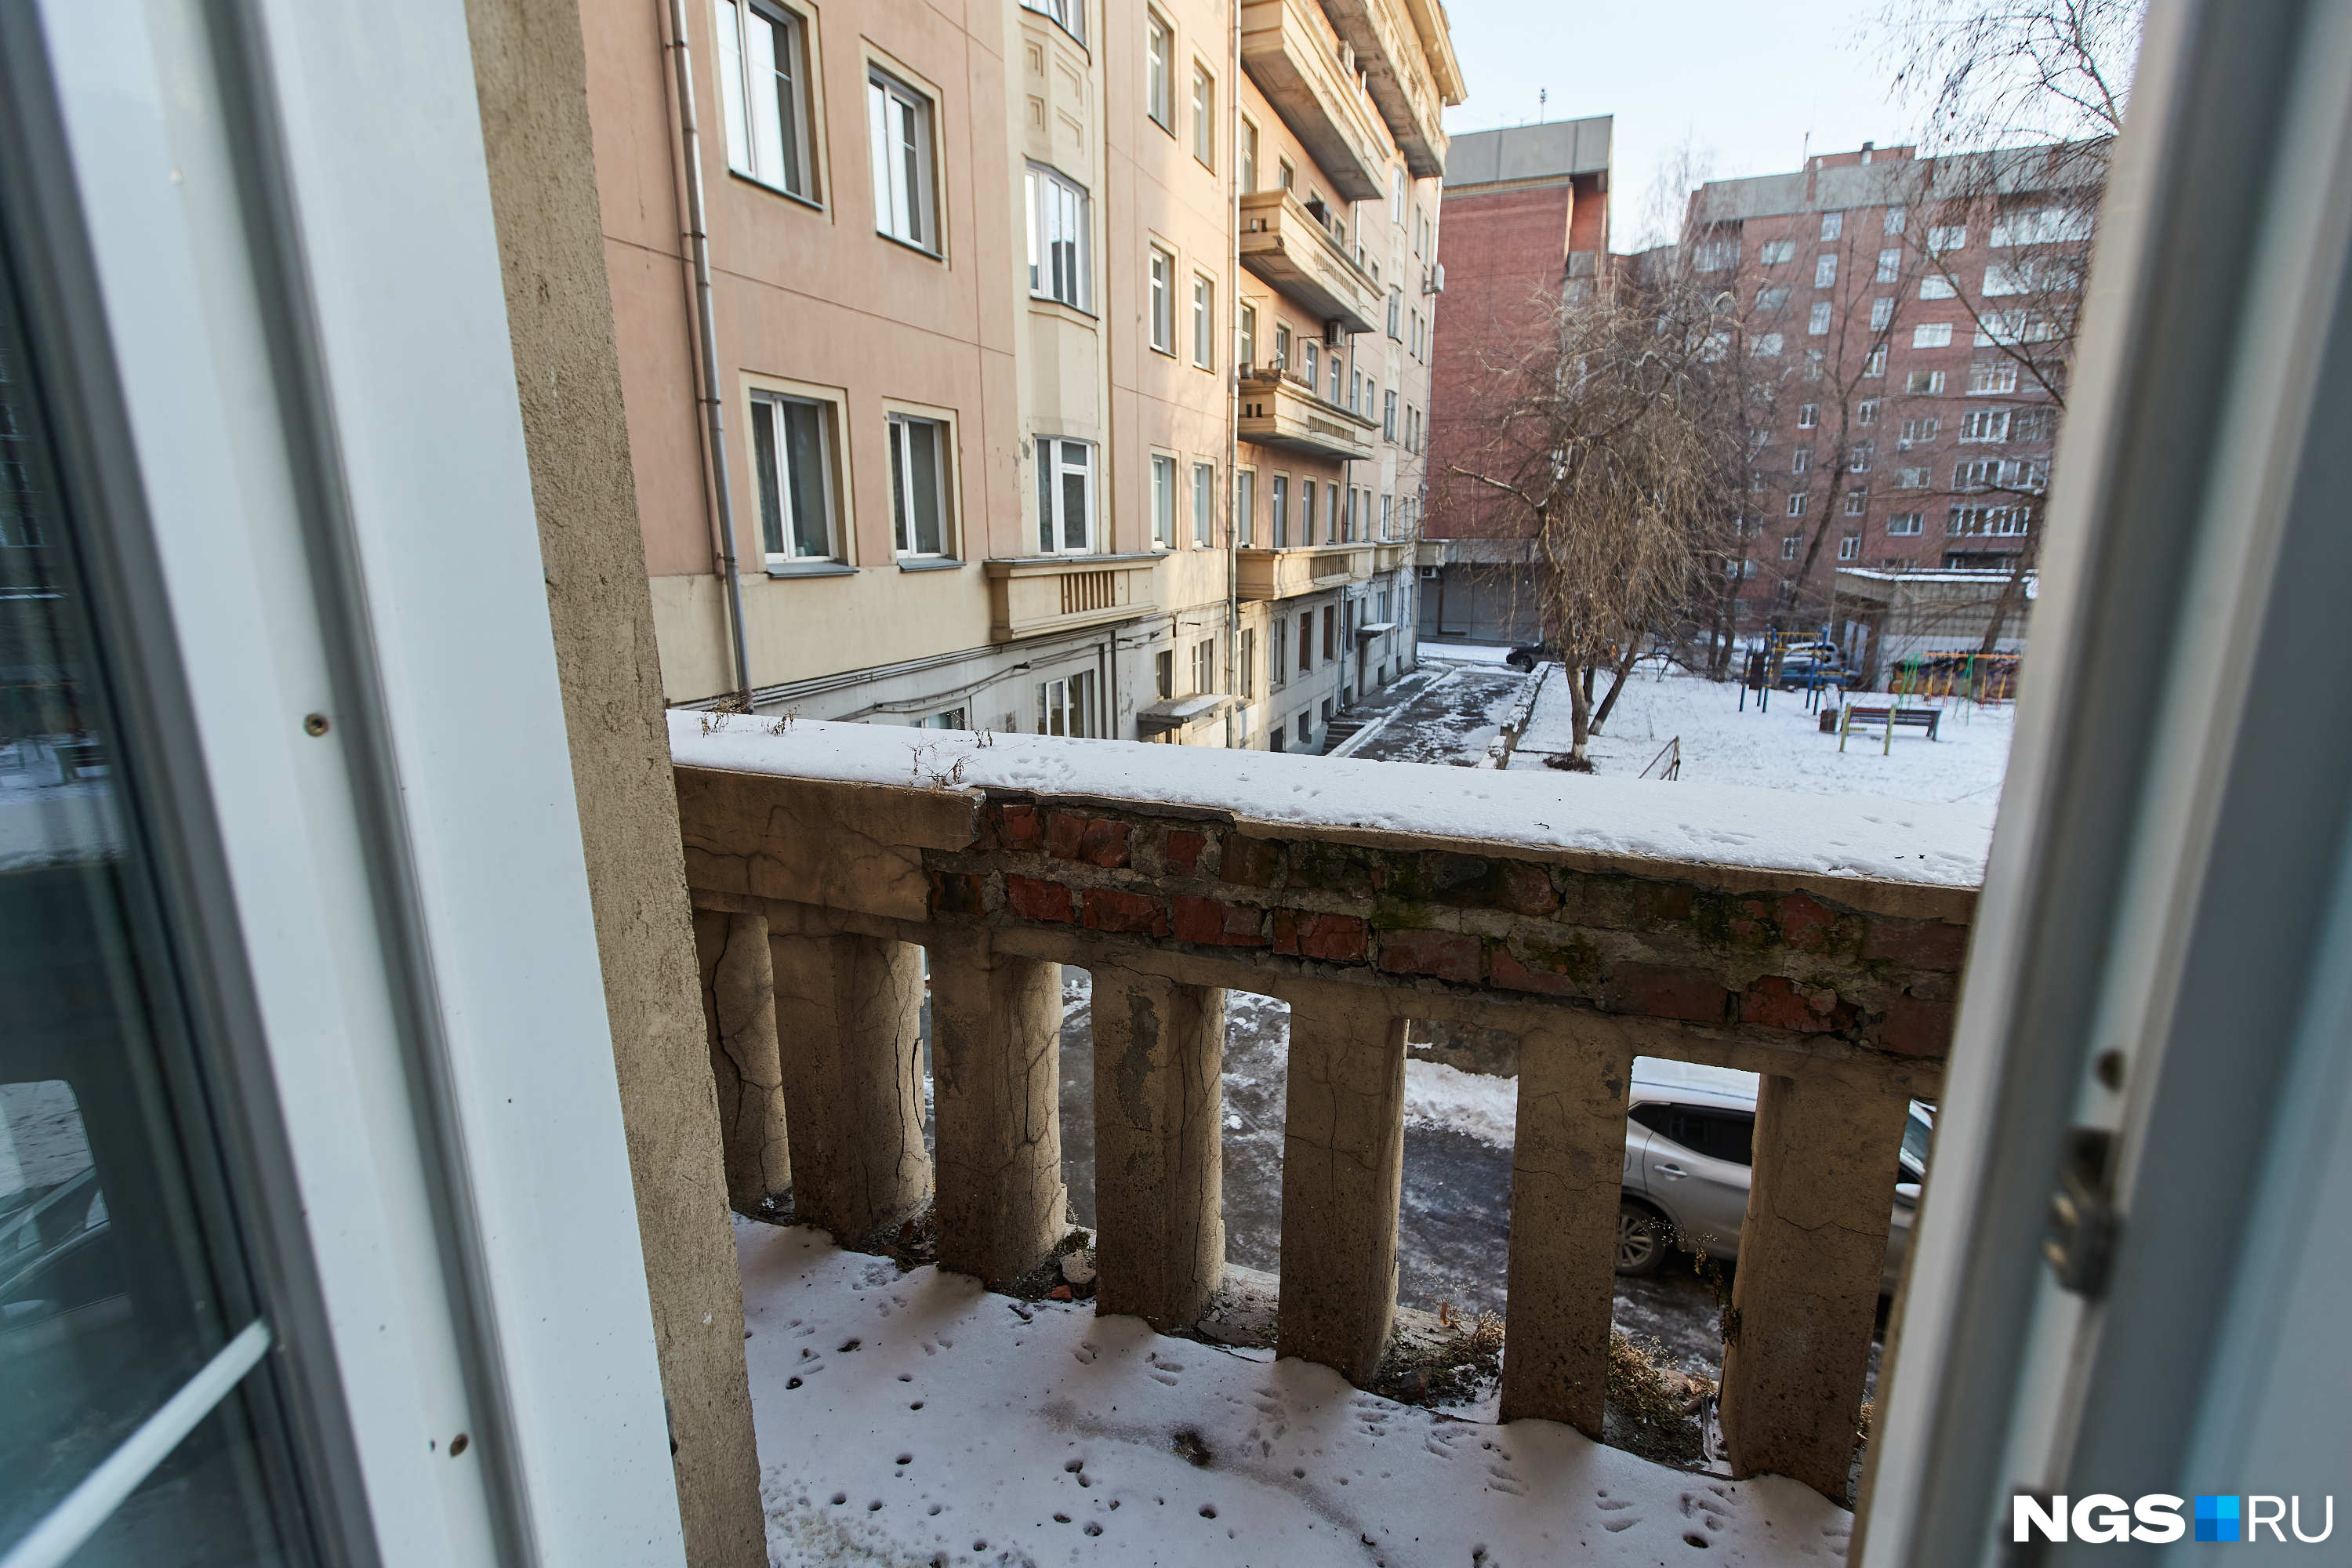 В квартире два балкона, с обоих открывается уютный вид, хотя конструкции и выглядят обветшало